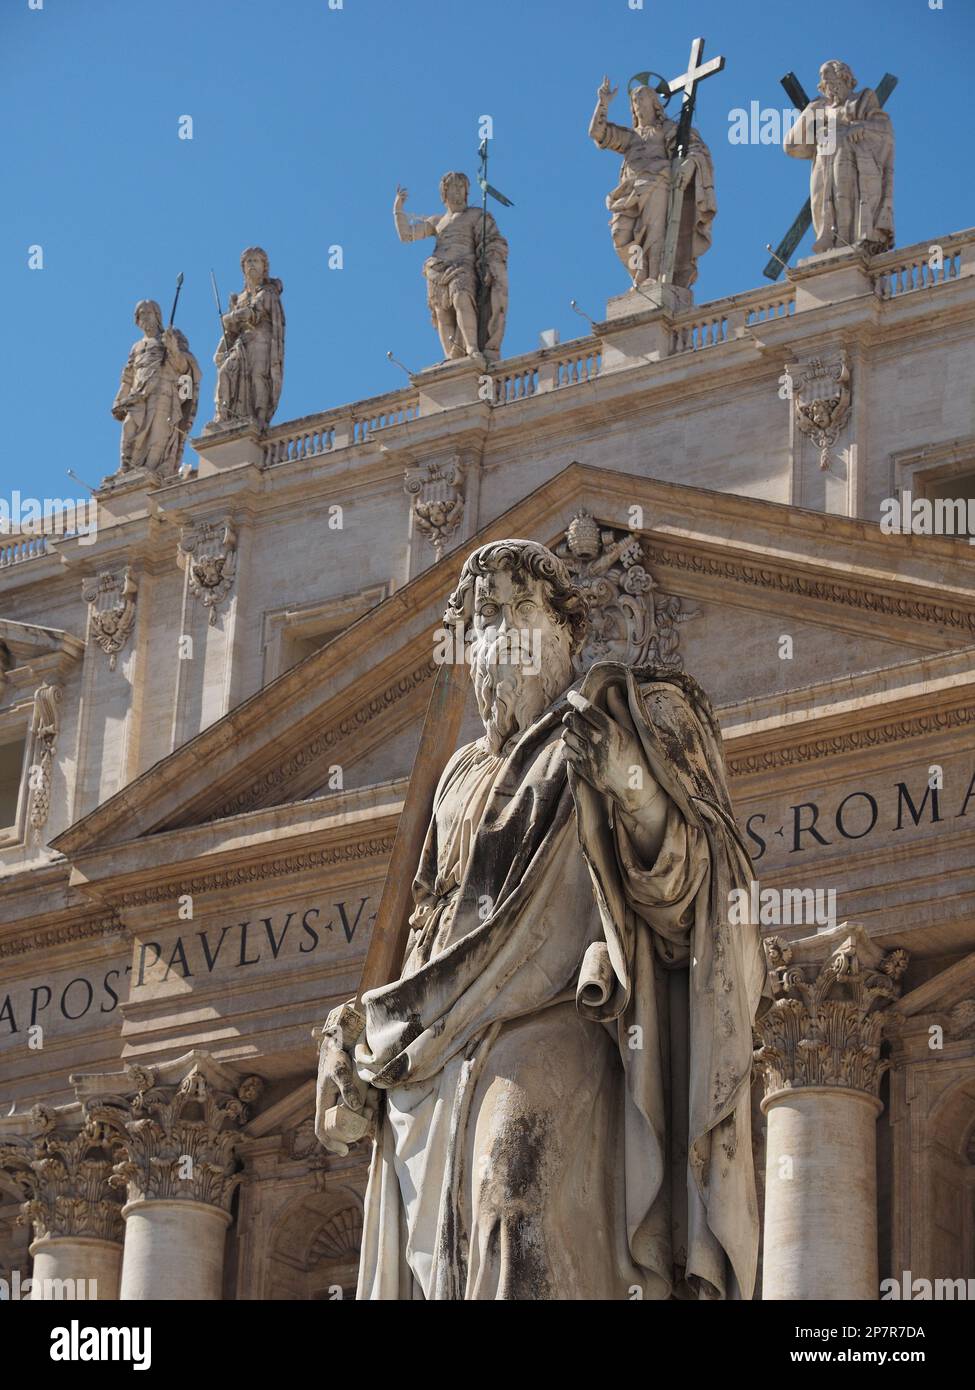 Détails de l'architecture et sculptures devant et au-dessus de la basilique Saint-Pierre dans la Cité du Vatican, le Vatican. Banque D'Images